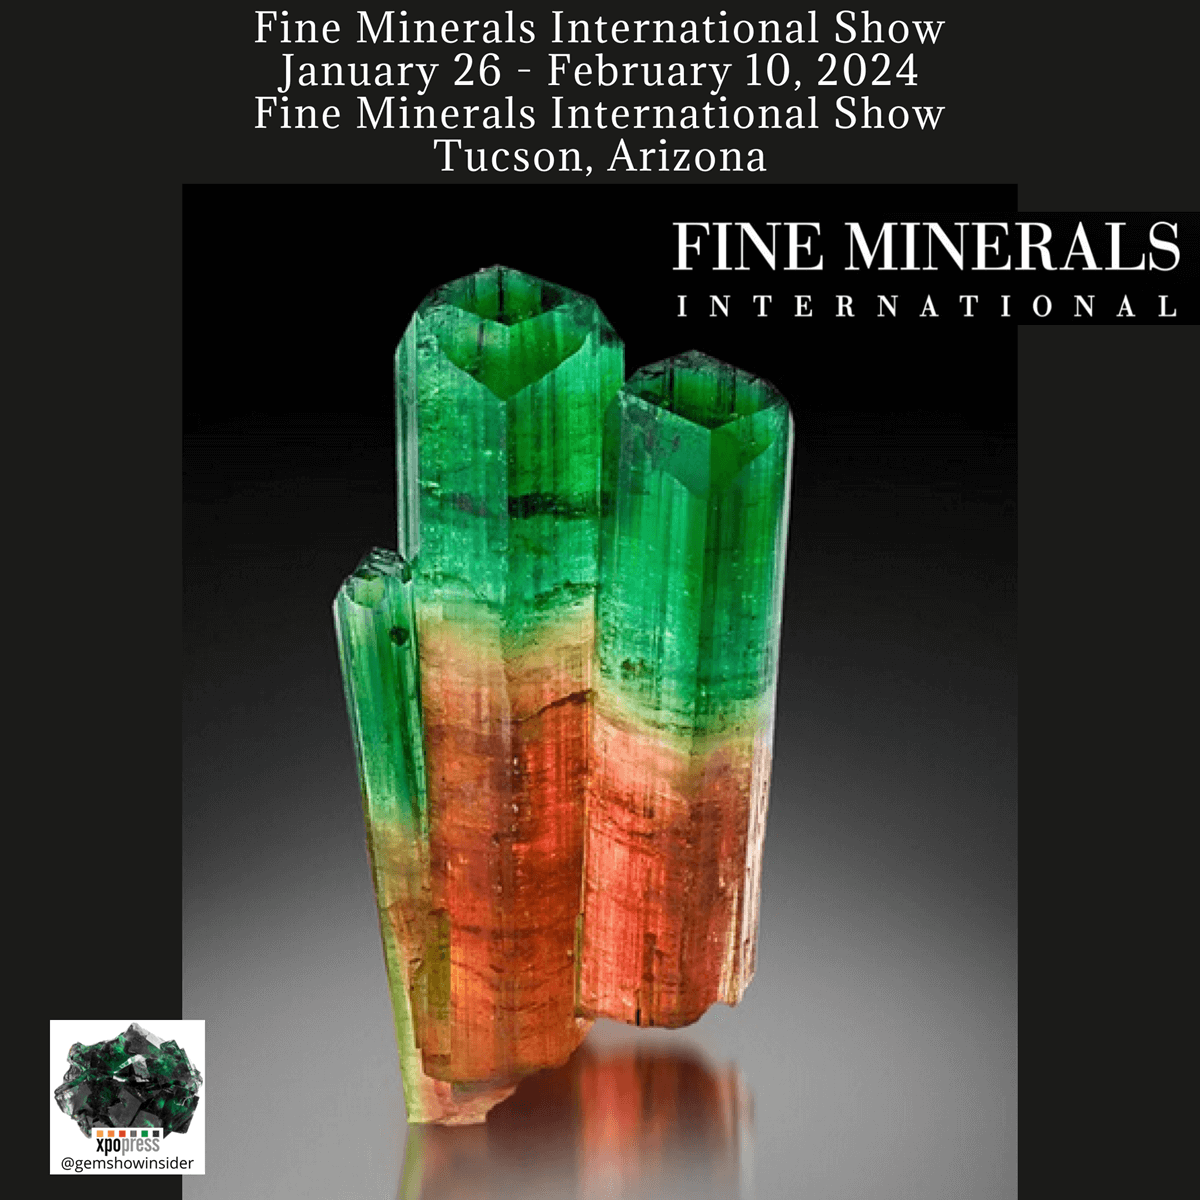 Fine Minerals International Show 2024 - Tucson